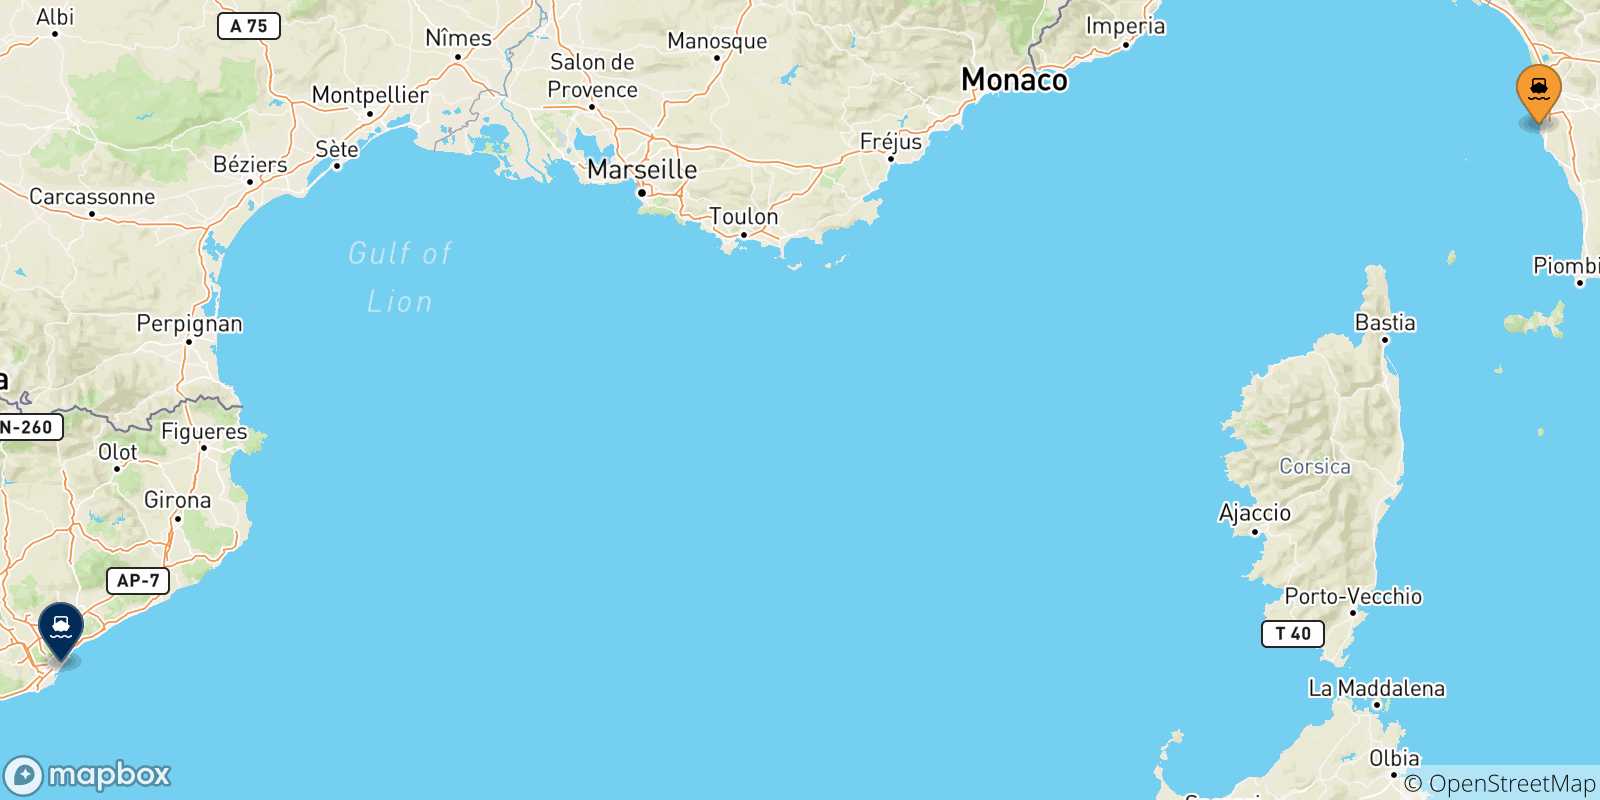 Mappa delle possibili rotte tra Livorno e la Spagna